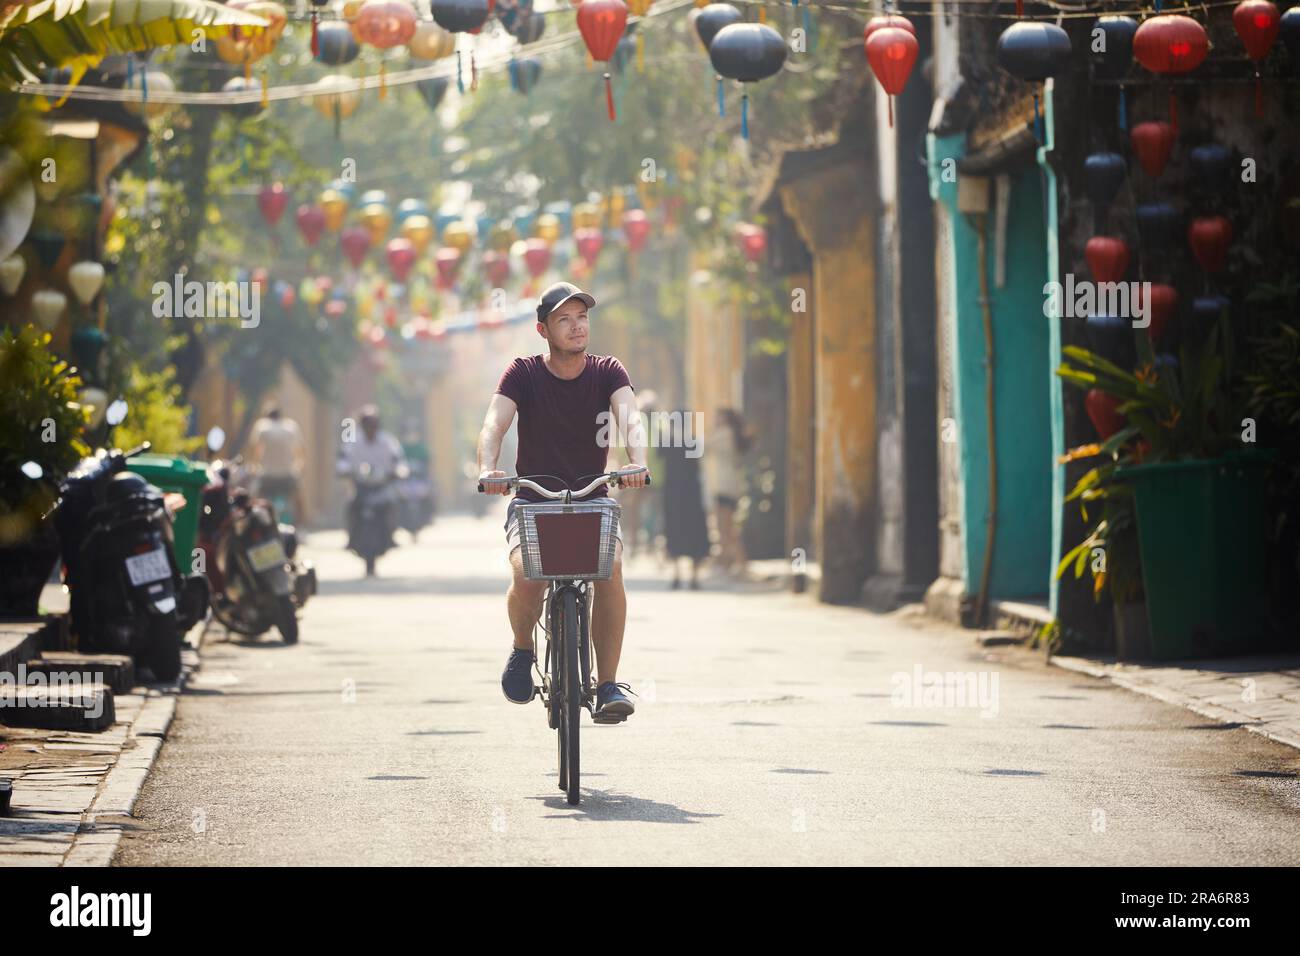 Touristenrad in der Altstadt. Straße der antiken Stadt, dekoriert mit traditionellen Laternen, Hoi an, Vietnam. Stockfoto